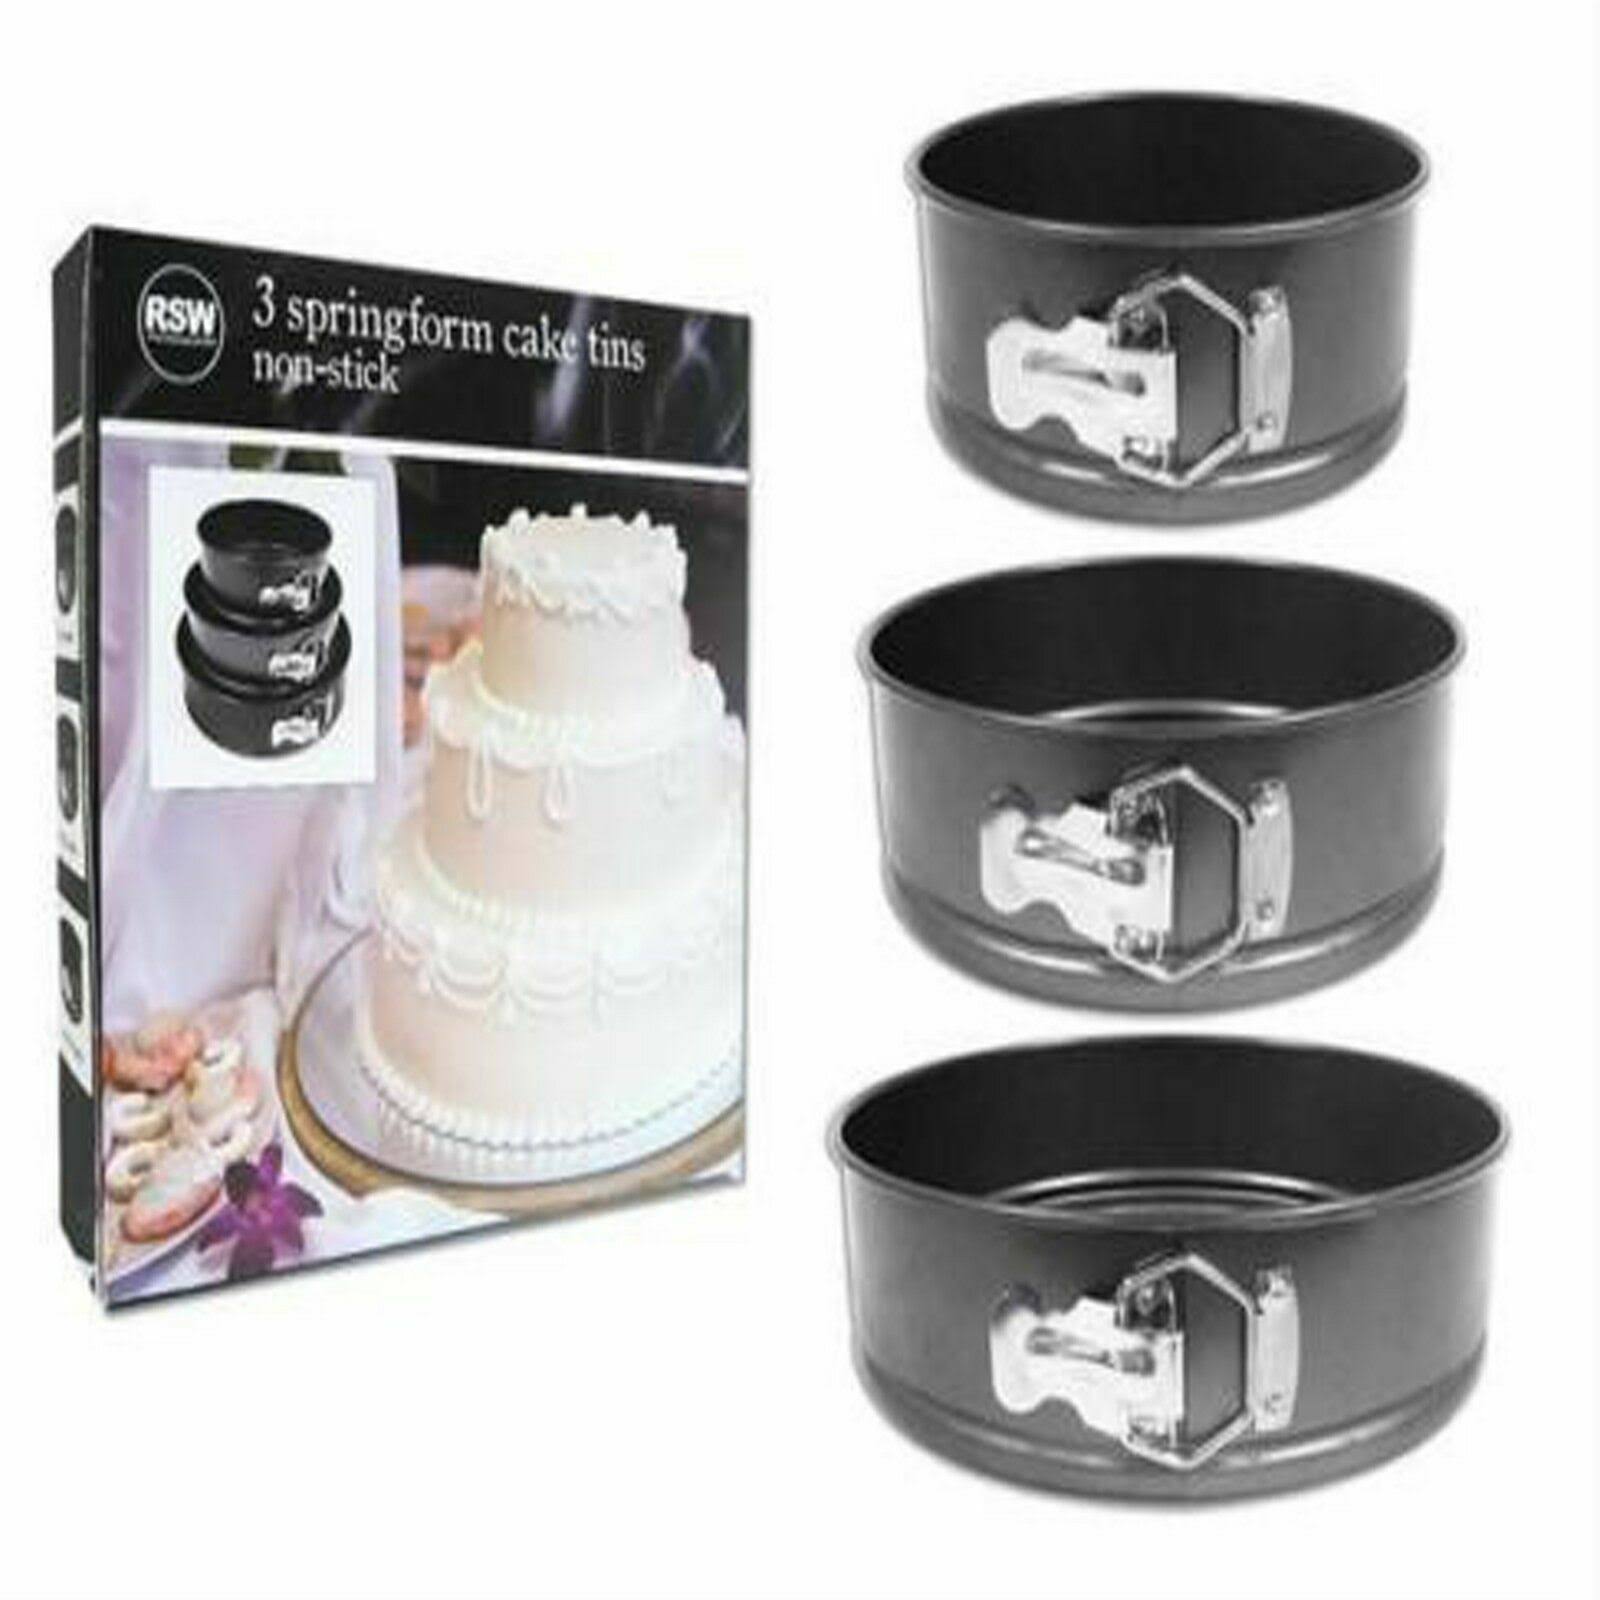 Set of 3 Non-Stick Cake Tins